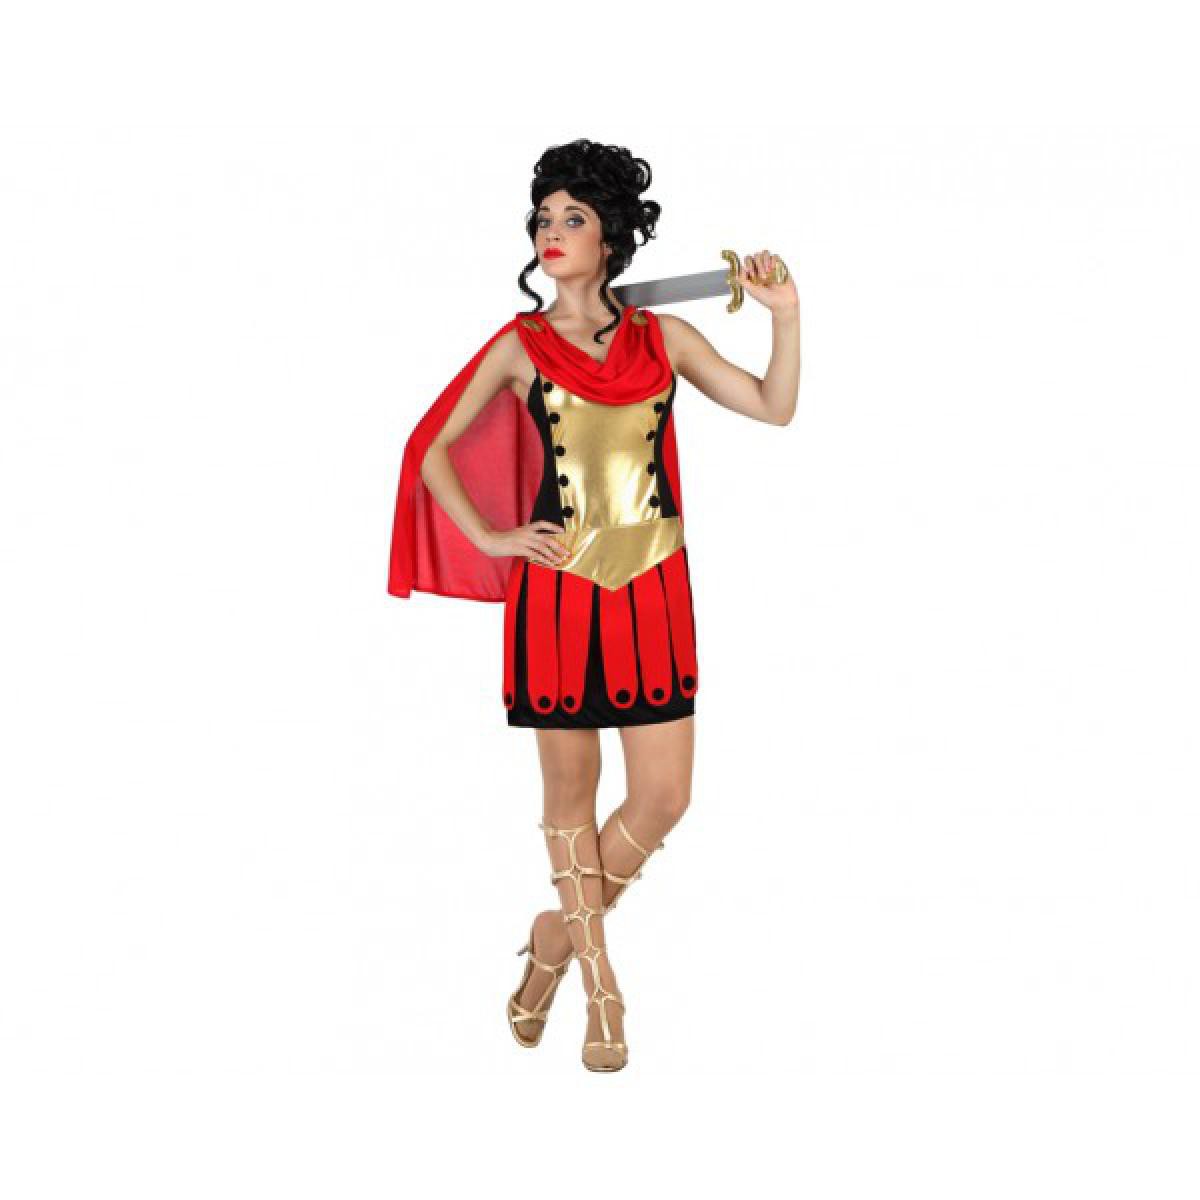 Totalcadeau - Costume pour femme guerrière rouge romaine (2 Pcs) Pas cher - Objets déco